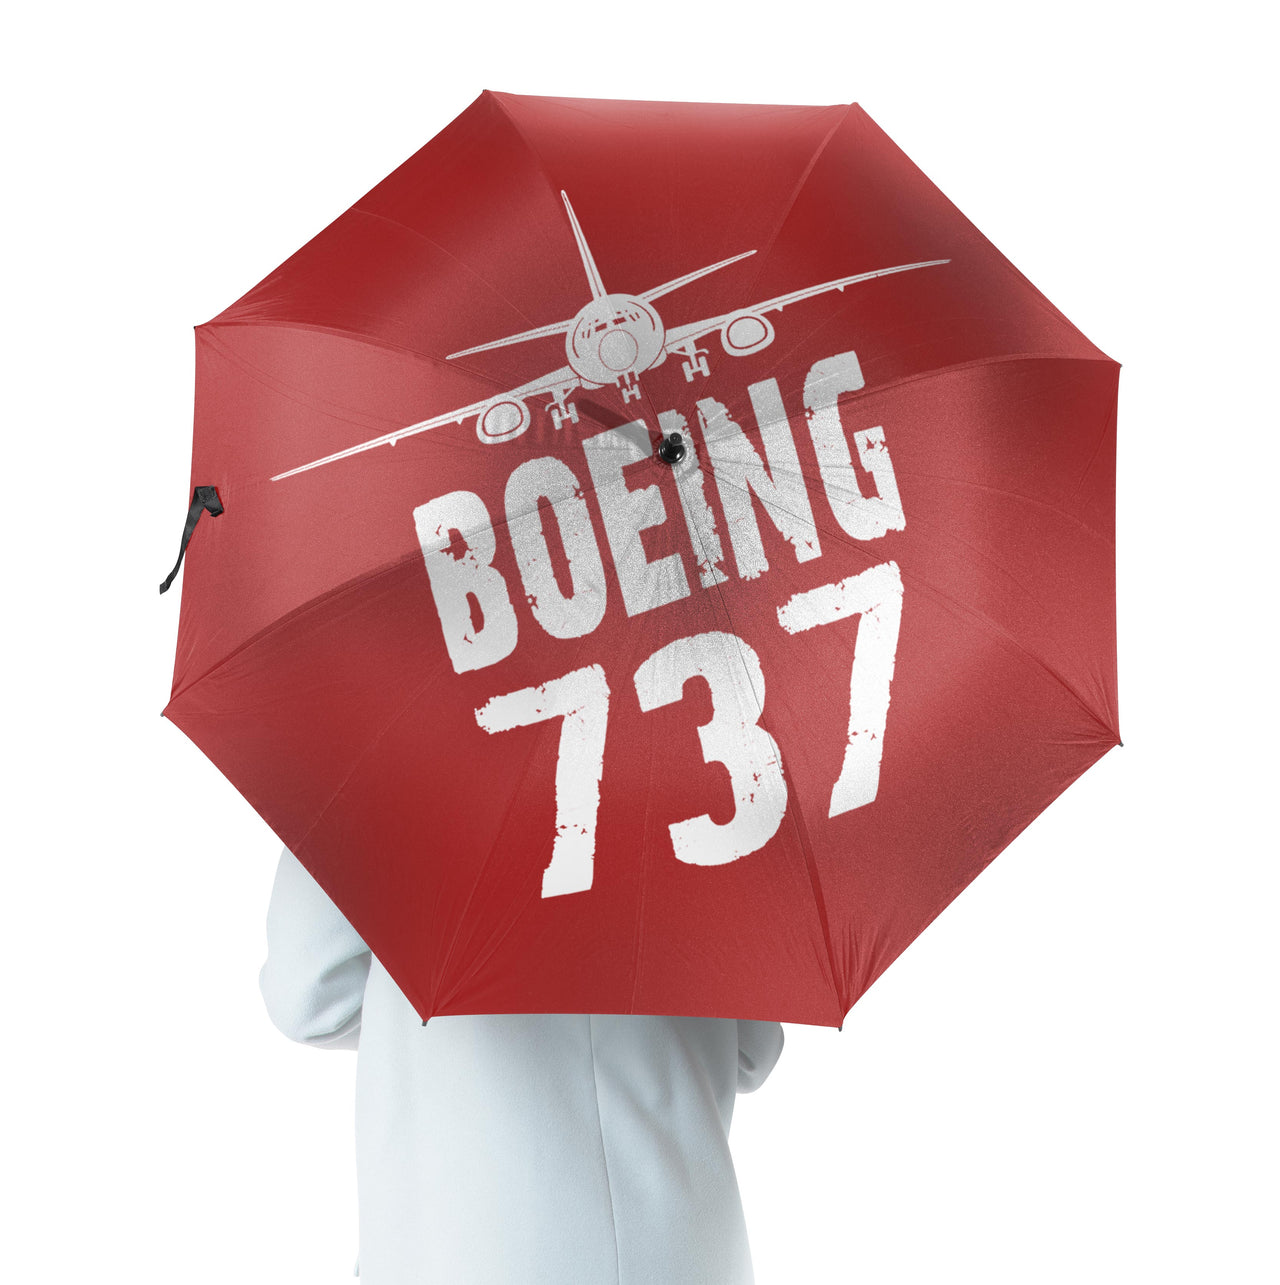 Boeing 737 & Plane Designed Umbrella